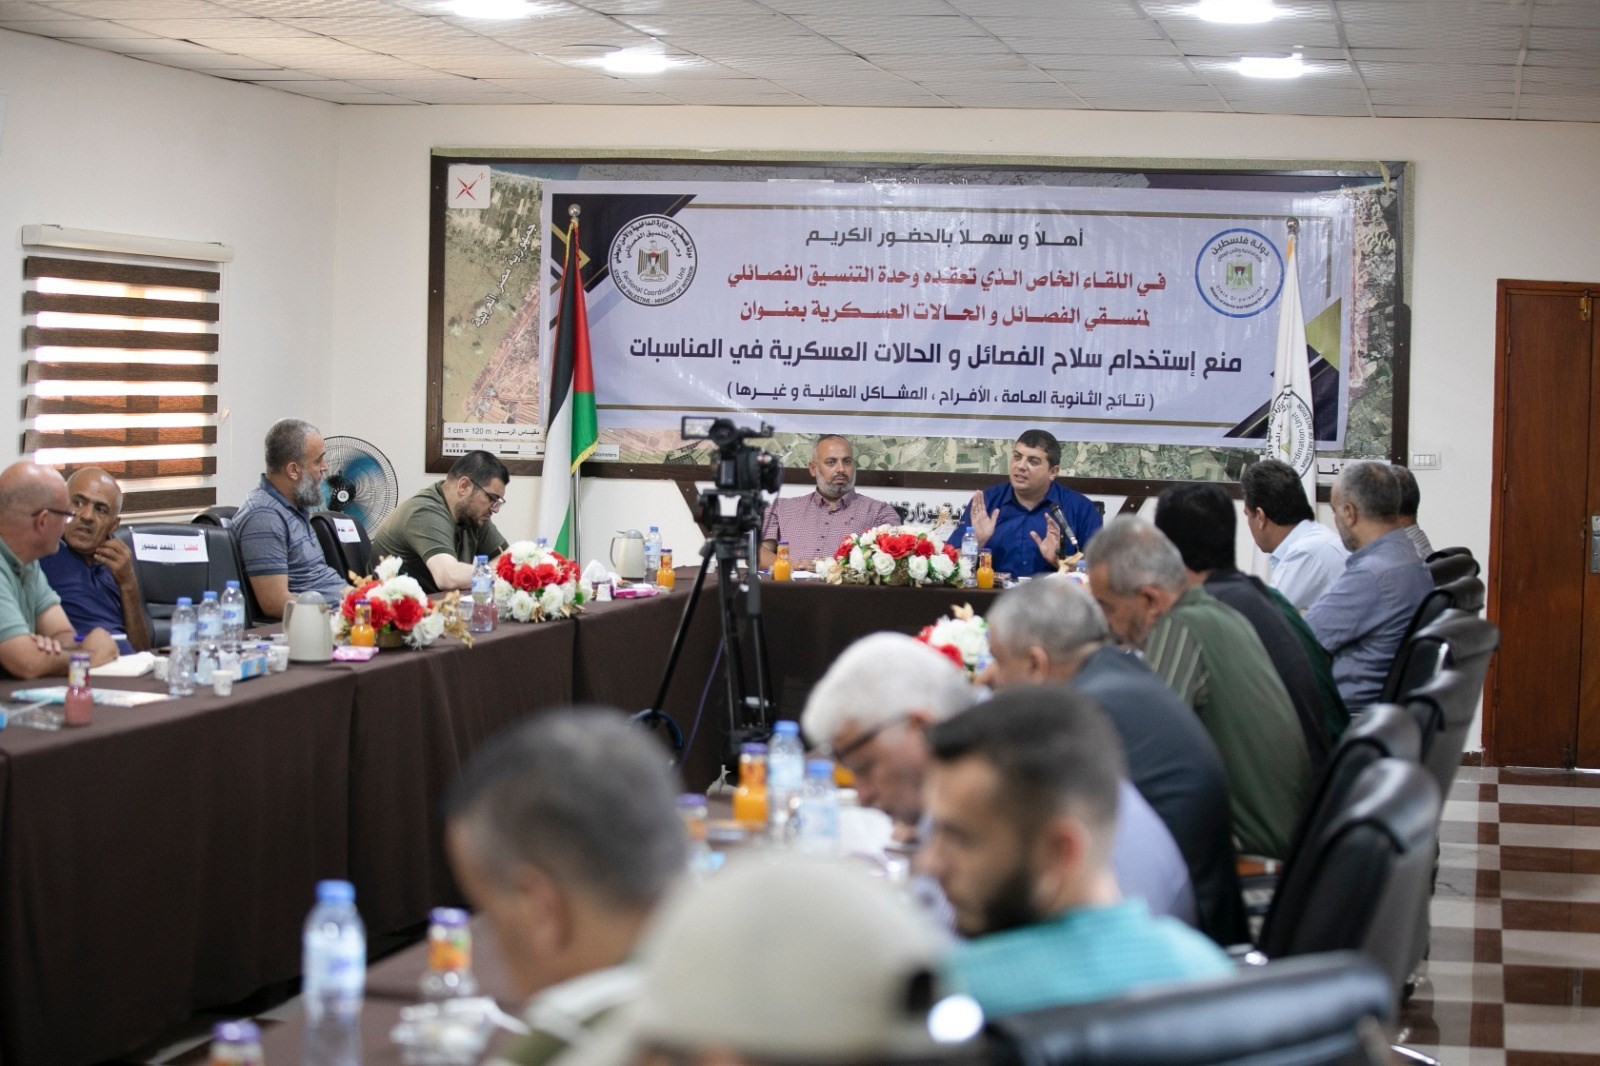 لقاء عقدته وحدة التنسيق الفصائلي بوزارة الداخلية مع منسقي الفصائل والحالات العسكرية بقطاع غزة 4.jpeg